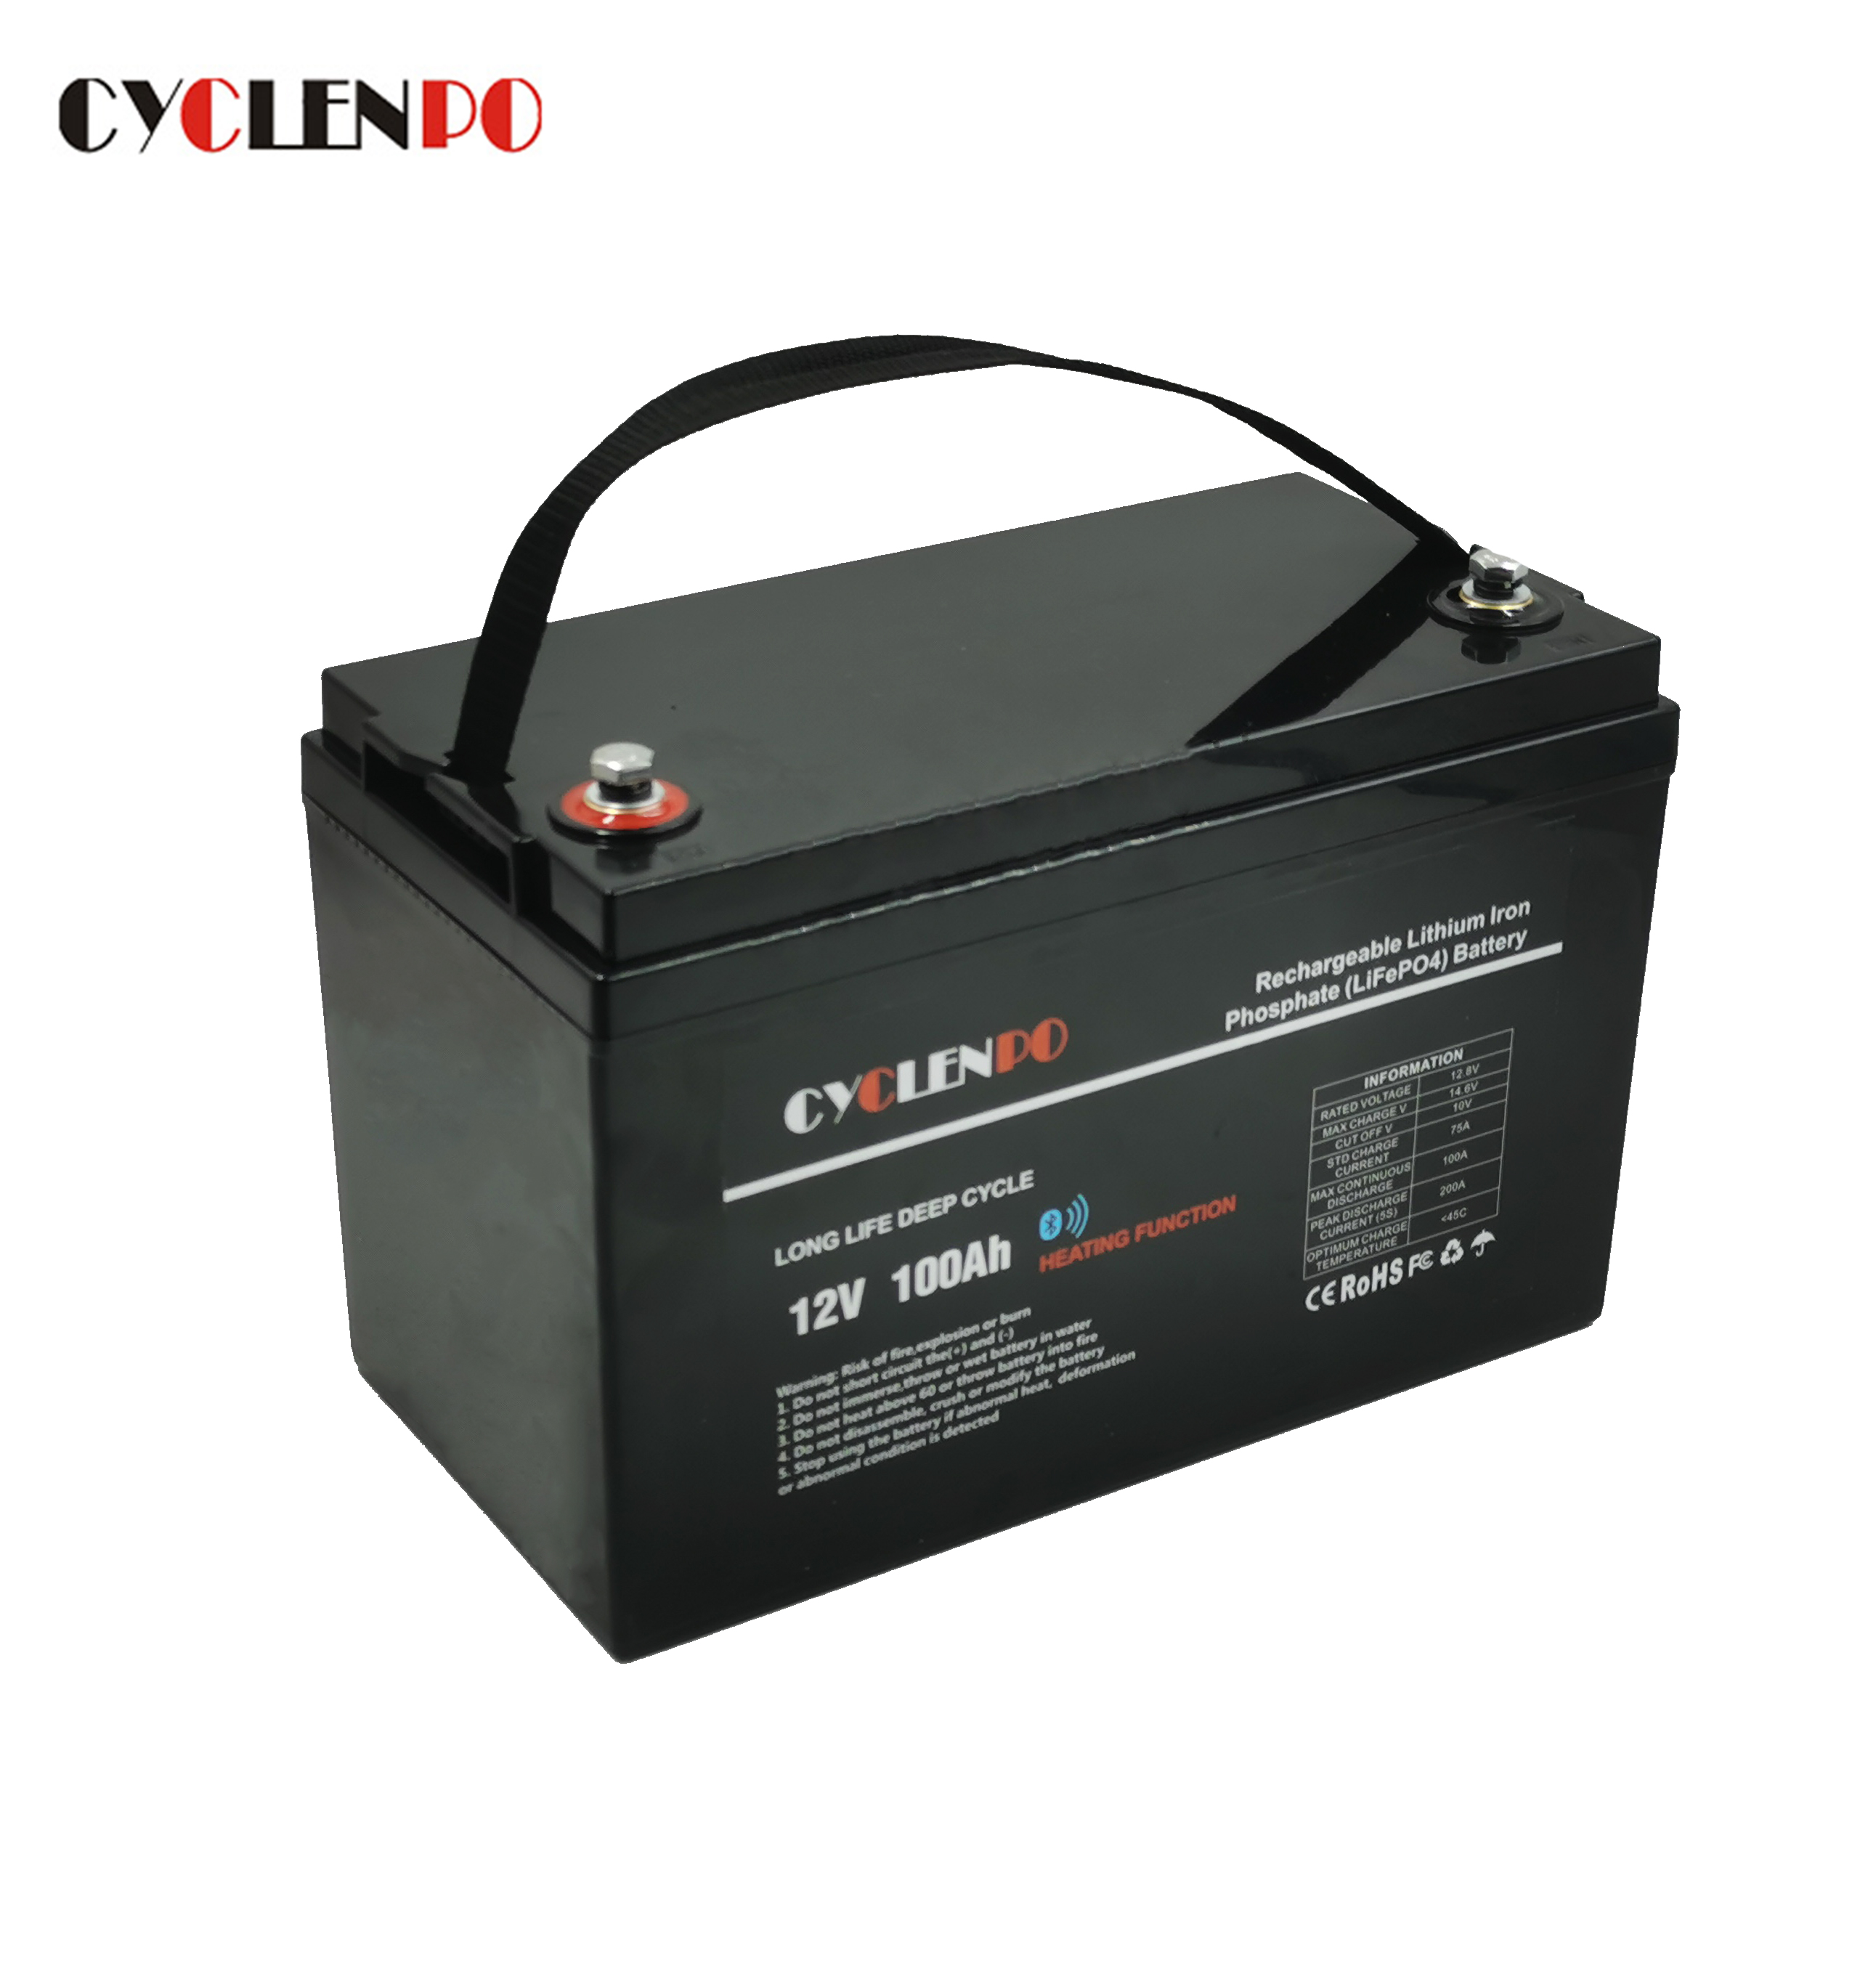 Batteria agli ioni di litio LiFePO4 auto riscaldata 12V 100Ah